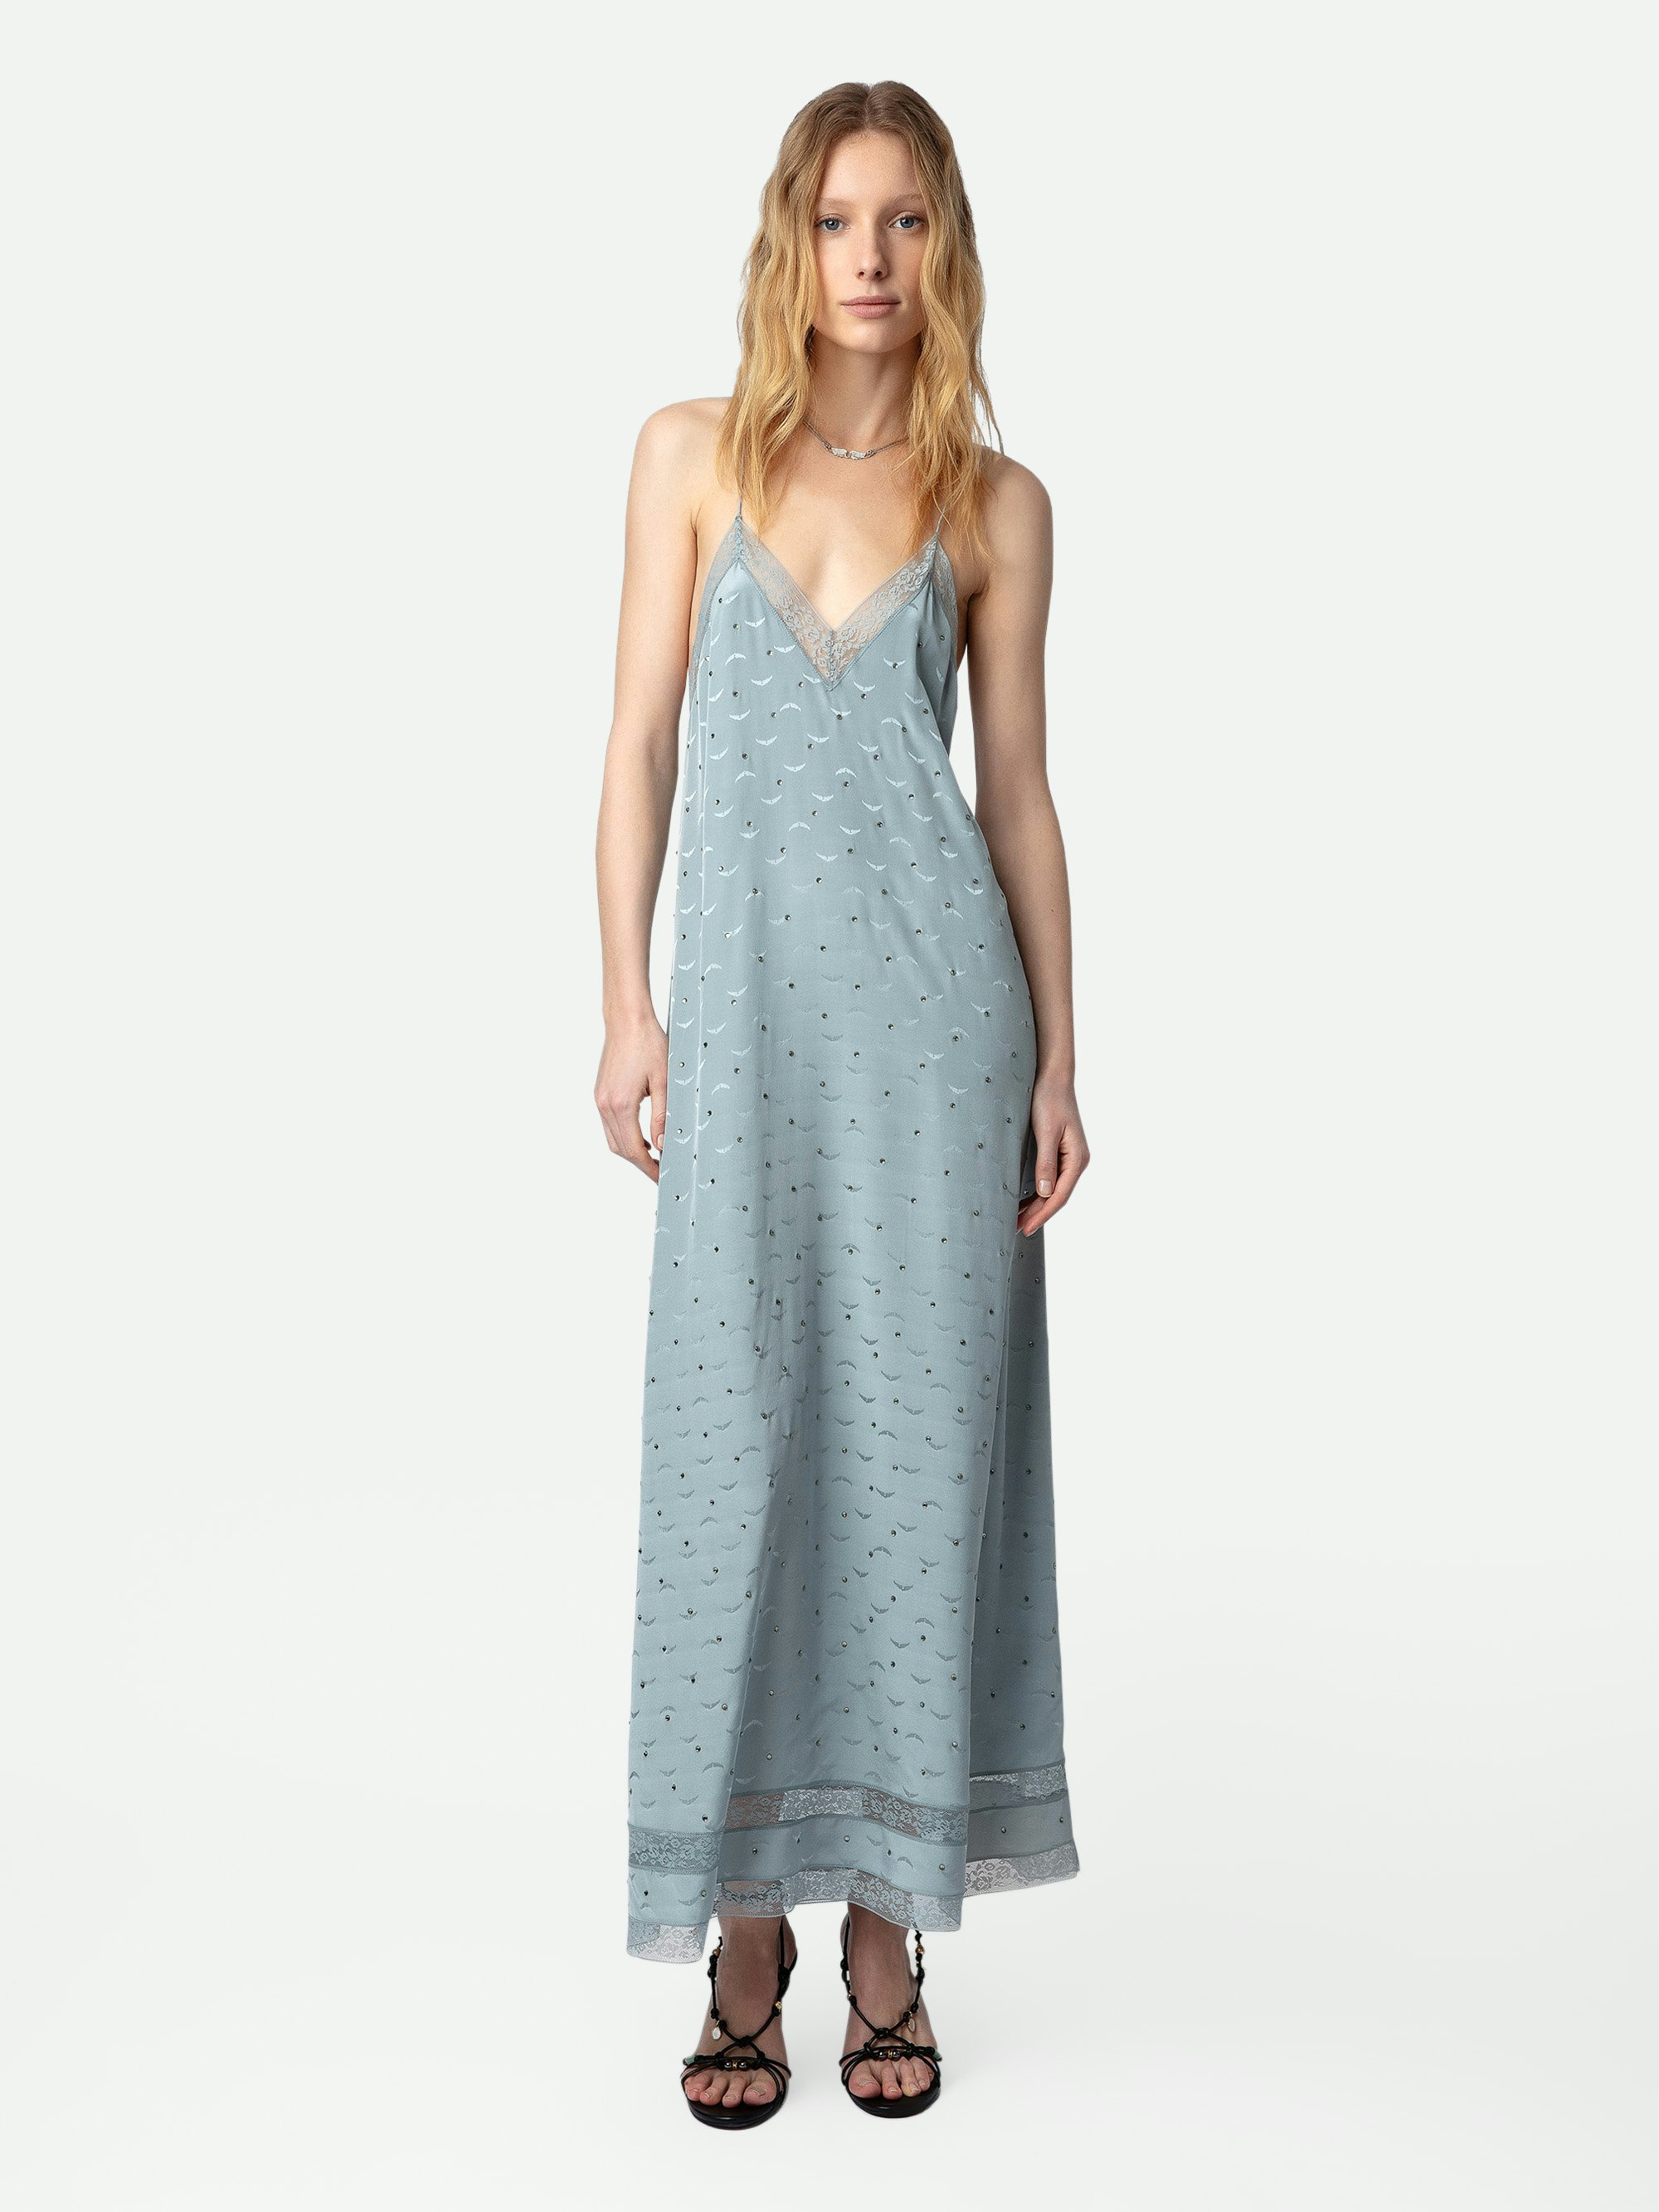 Kleid Reman Seide Jacquard - Langes Seidenkleid im Lingerie-Stil in Himmelblau mit Jacquard-Flügeln, Strass und Spitze zum Binden am Rücken.